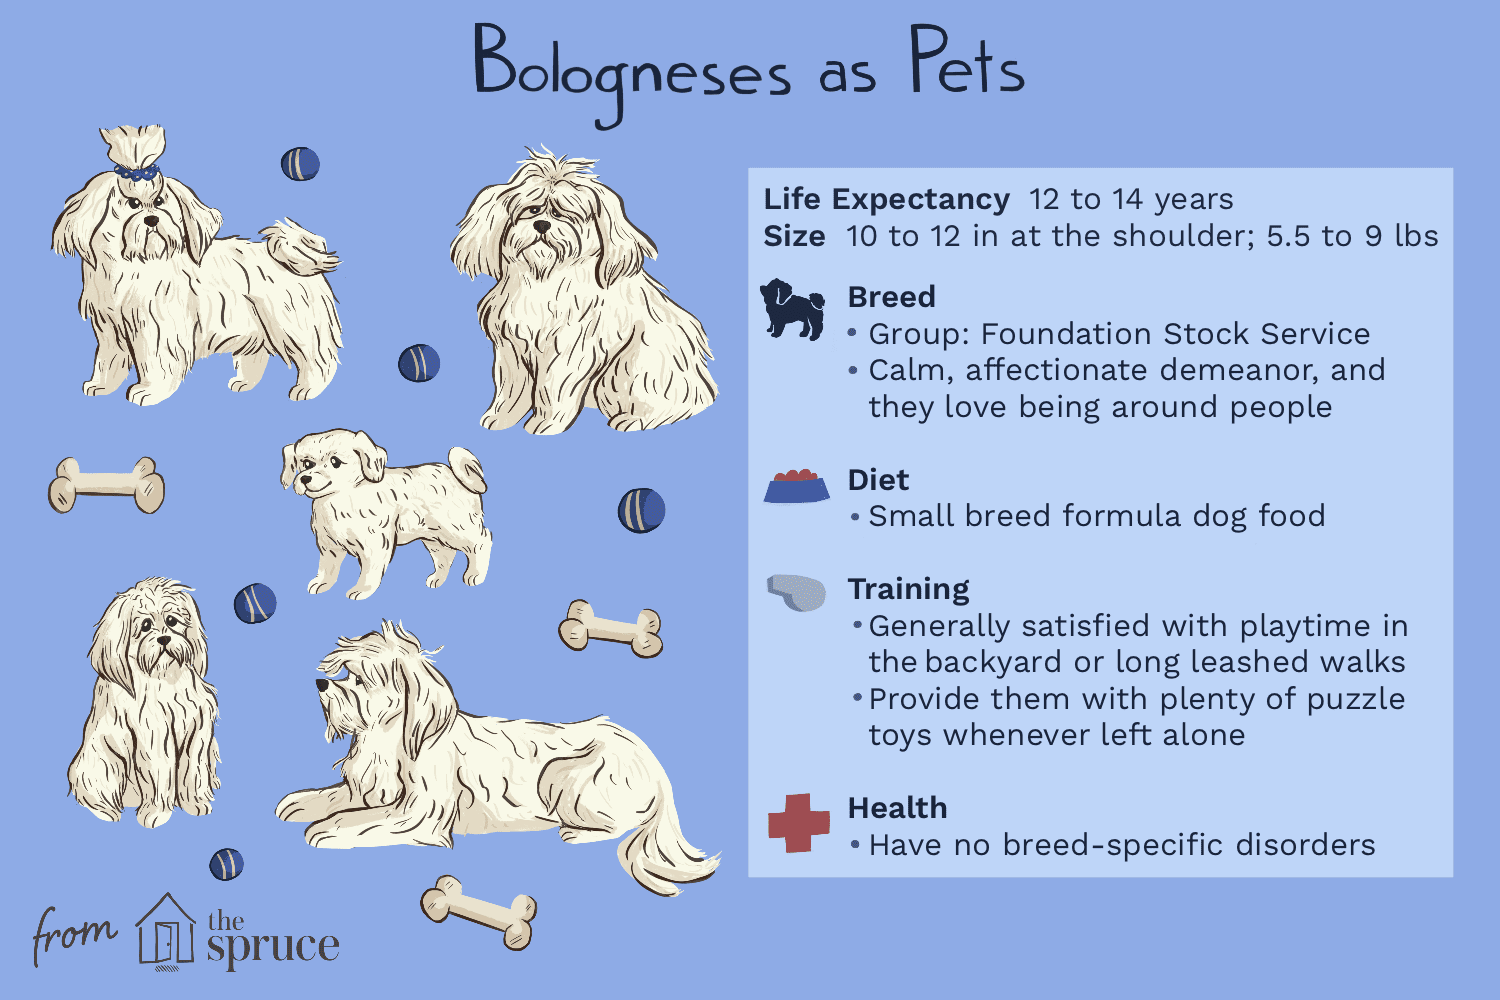 Bolognese (Bolos):hondenrasprofiel